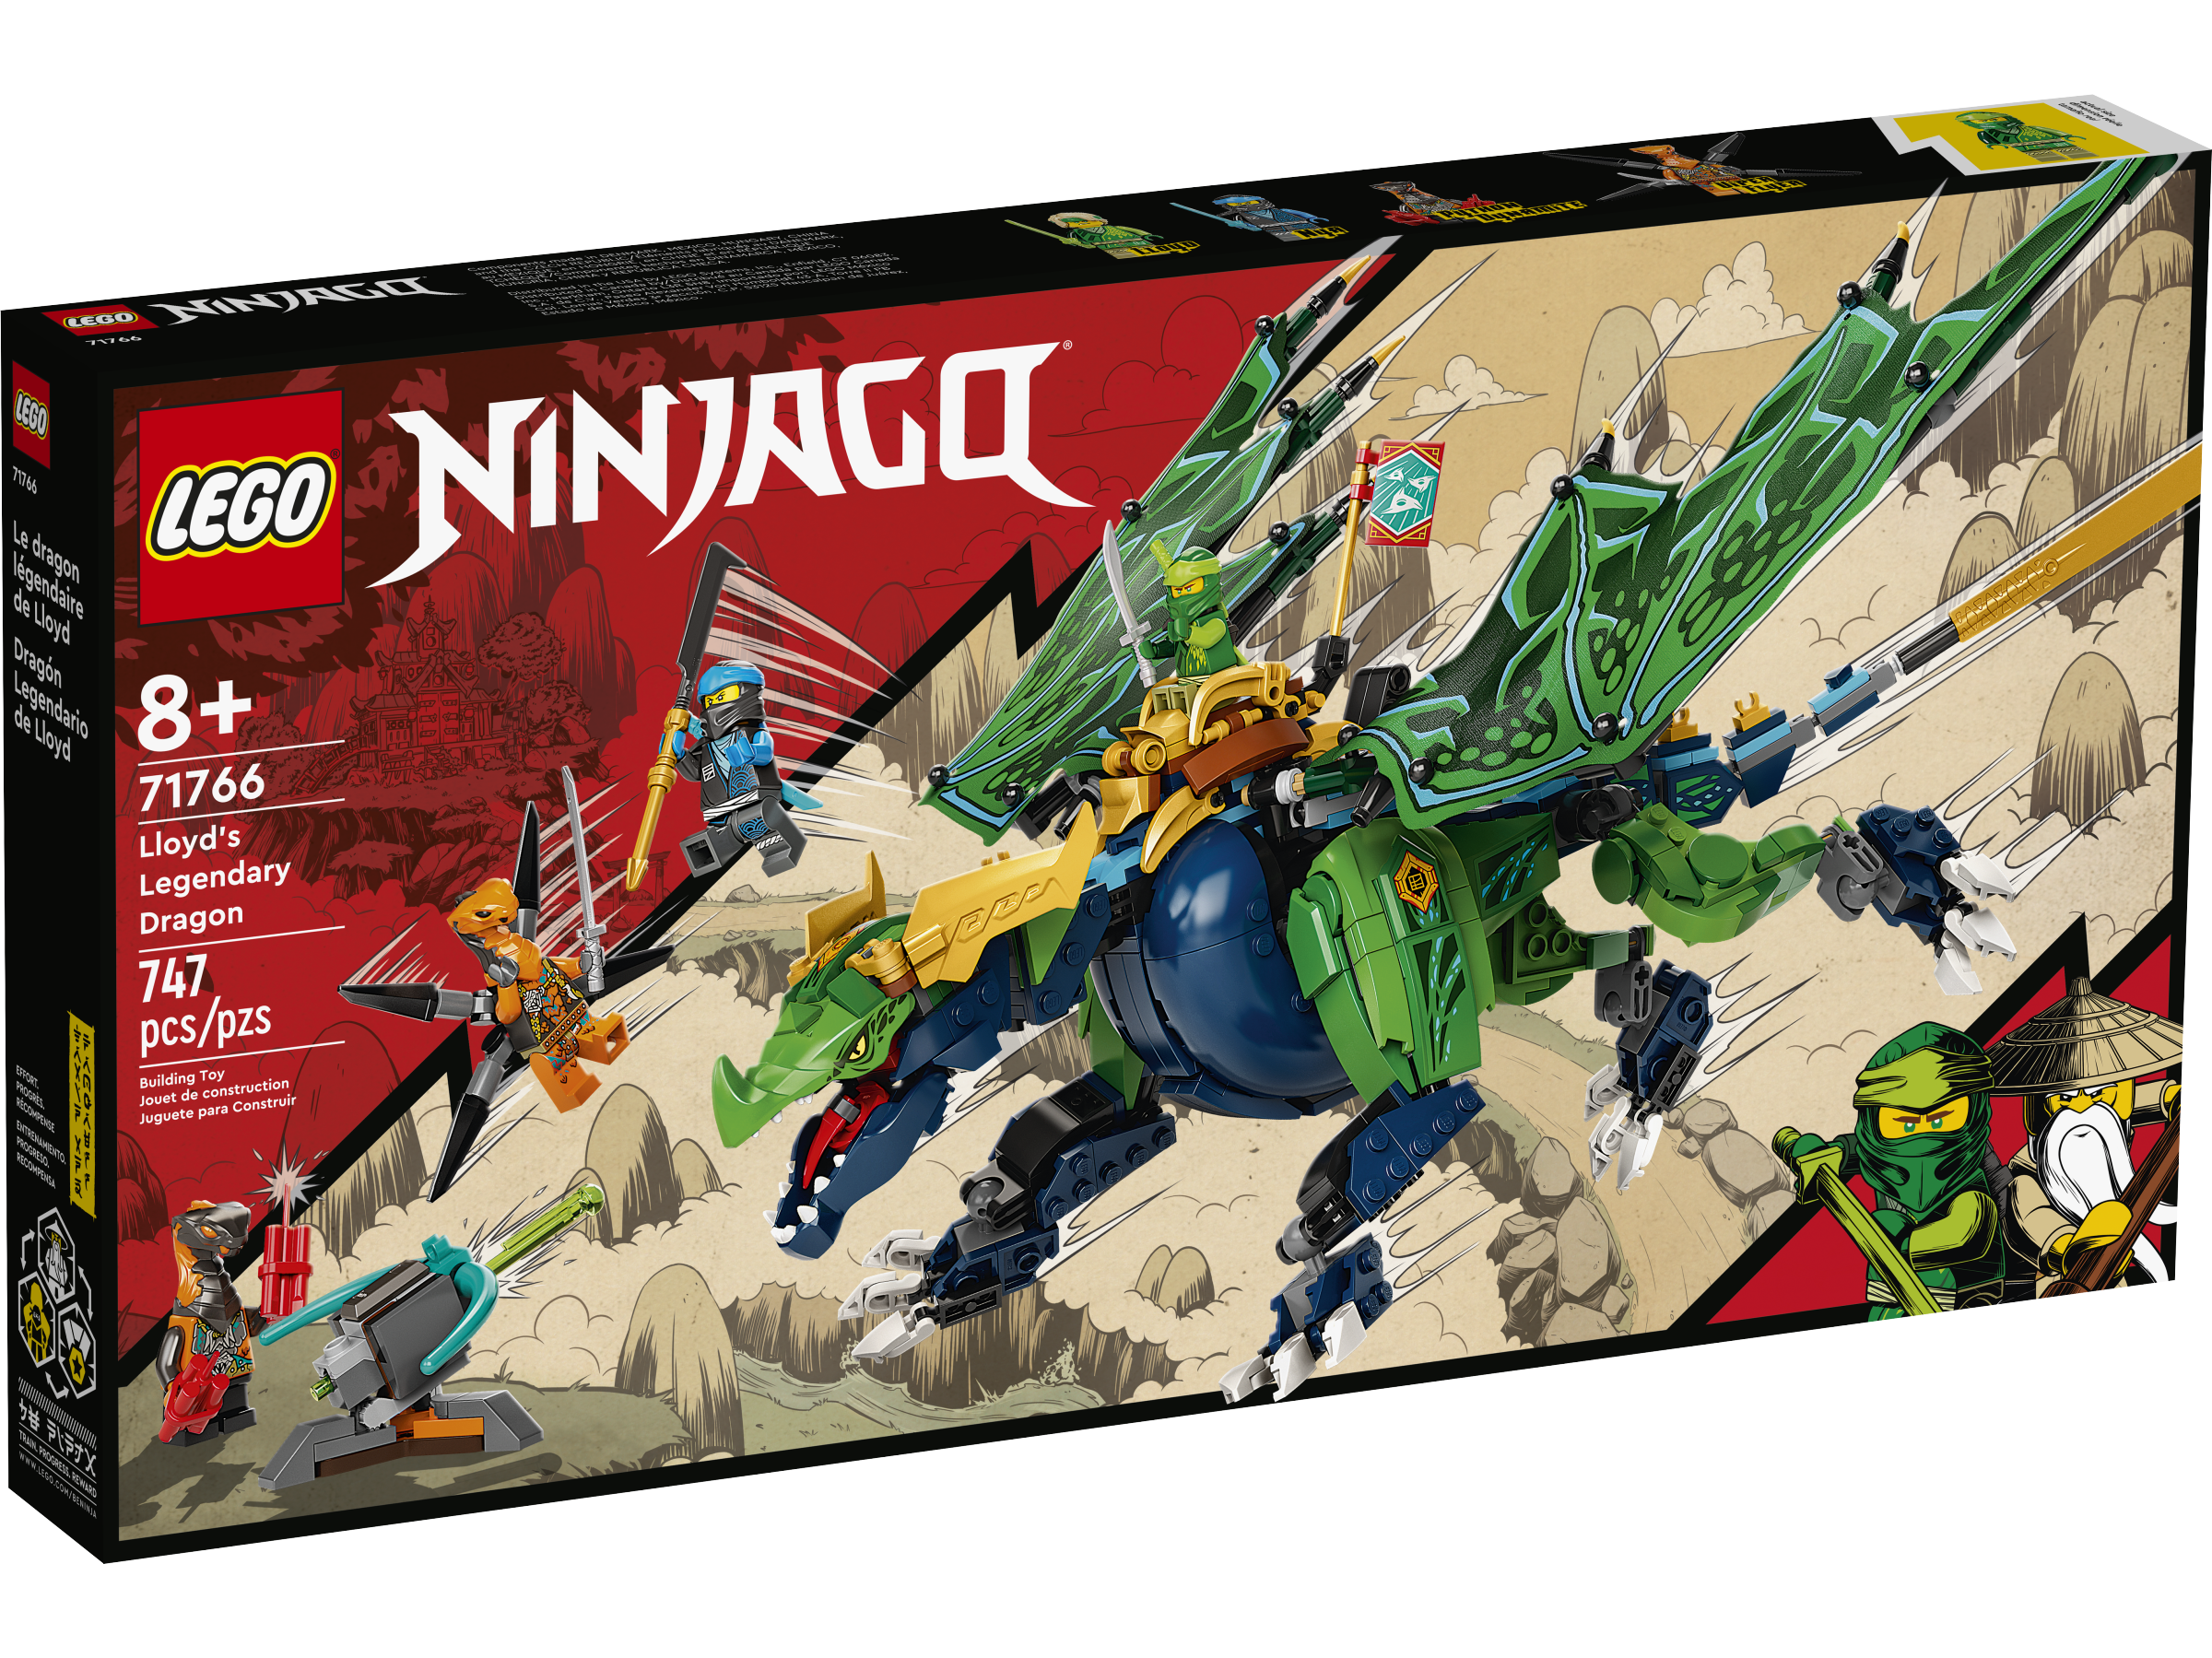 Every Lego Ninjago DRAGON - Complete Collection! 